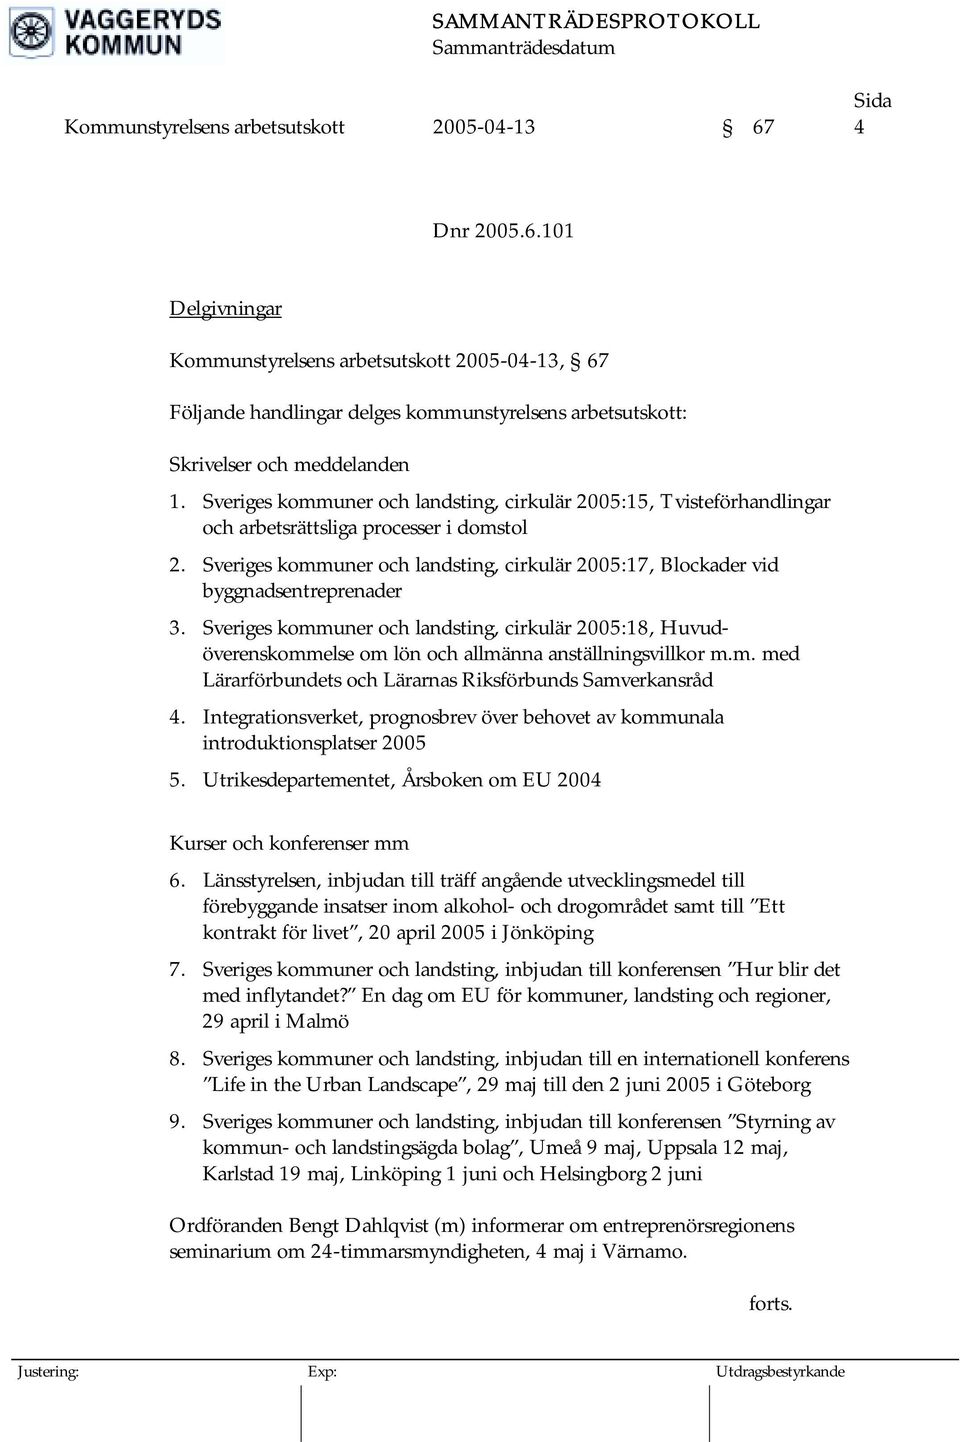 Sveriges kommuner och landsting, cirkulär 2005:17, Blockader vid byggnadsentreprenader 3.